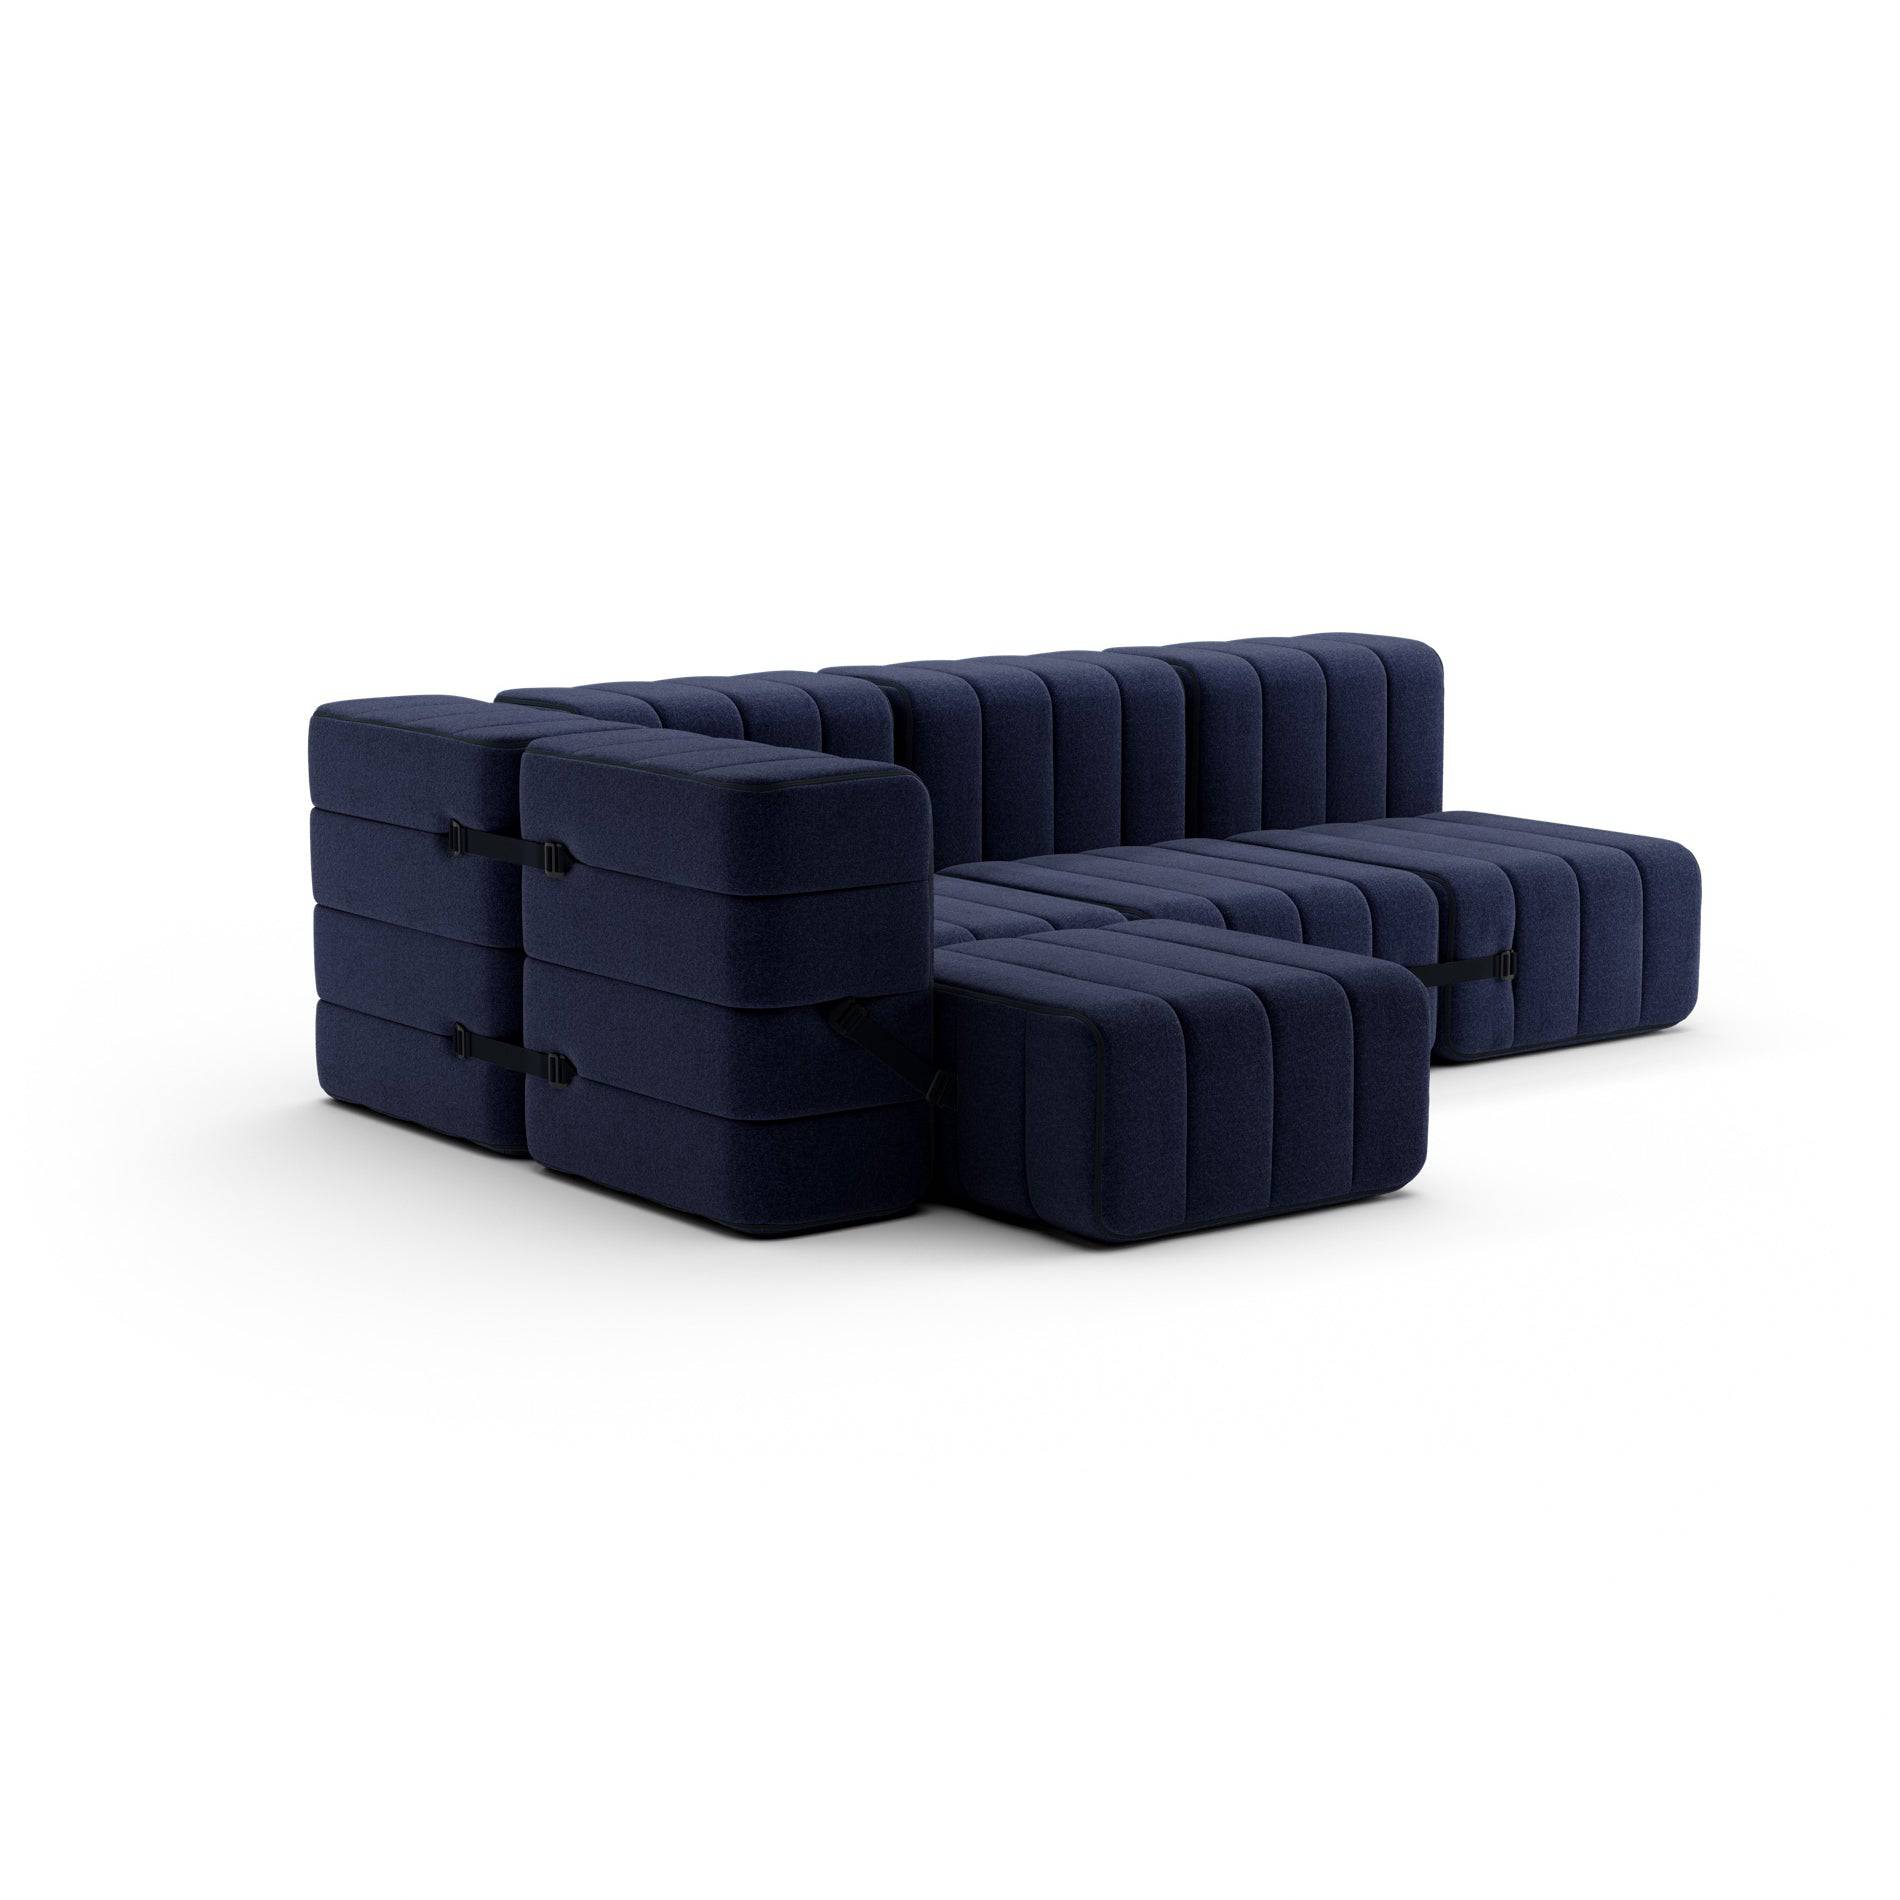 Curt Sofa System - Blue